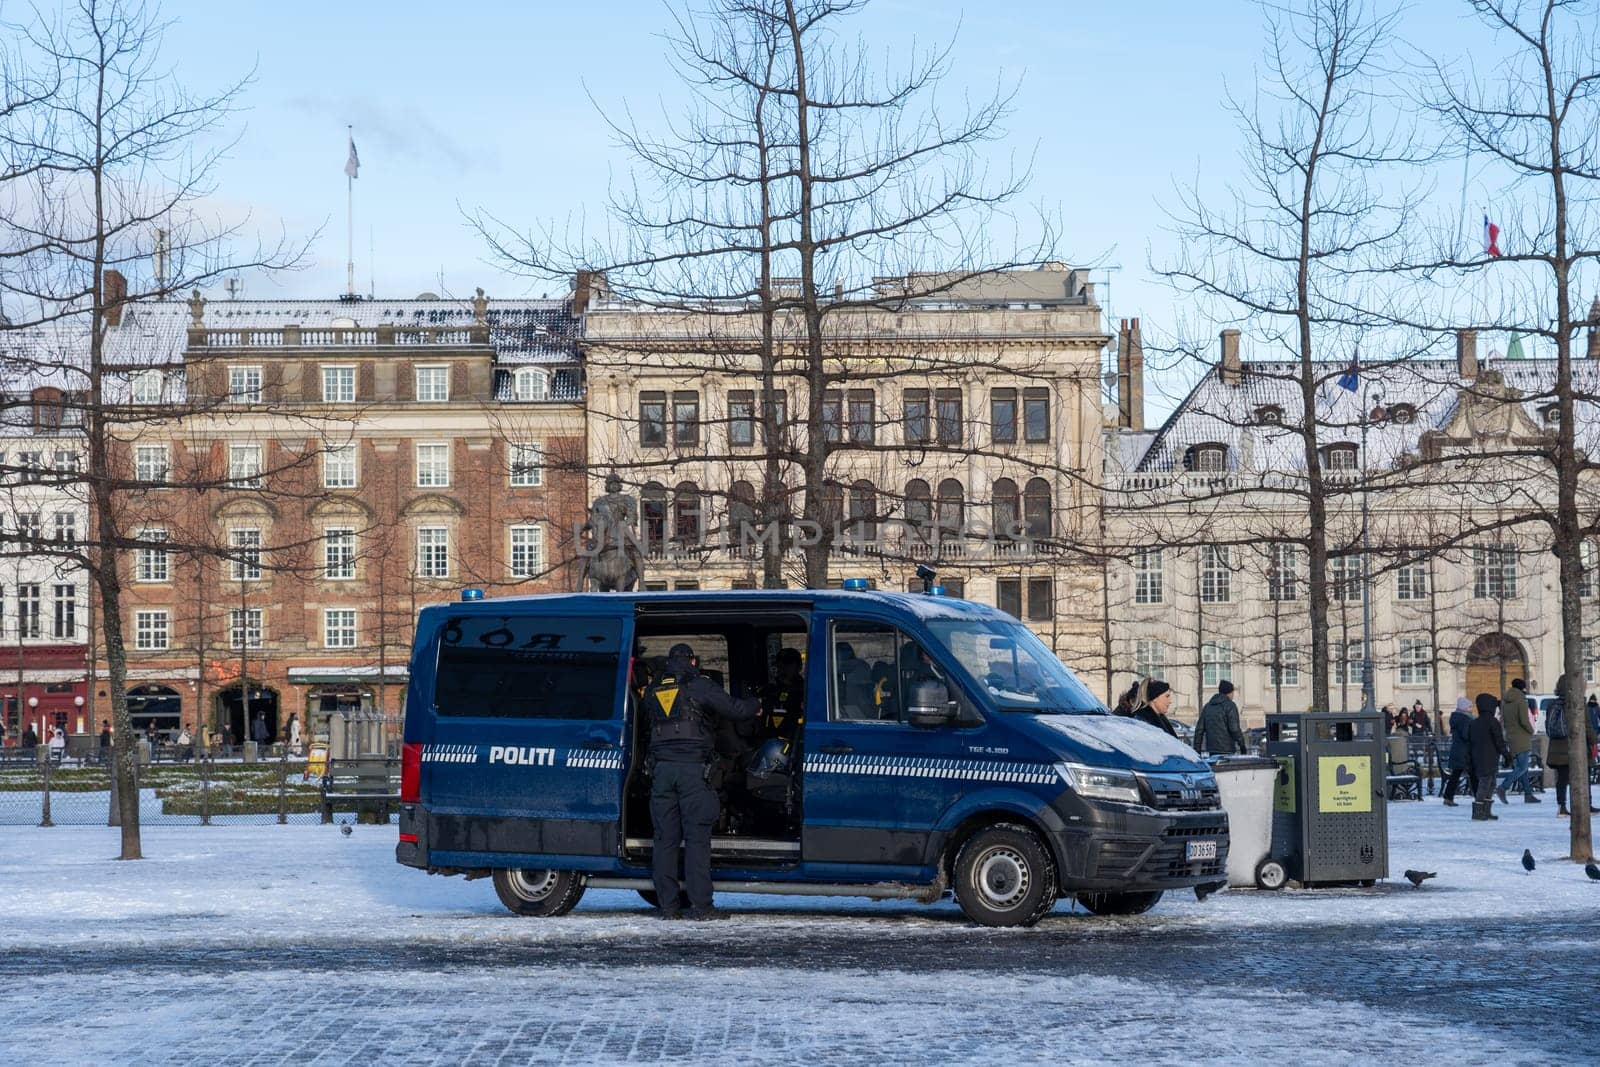 Police Car in Copenhagen, Denmark by oliverfoerstner